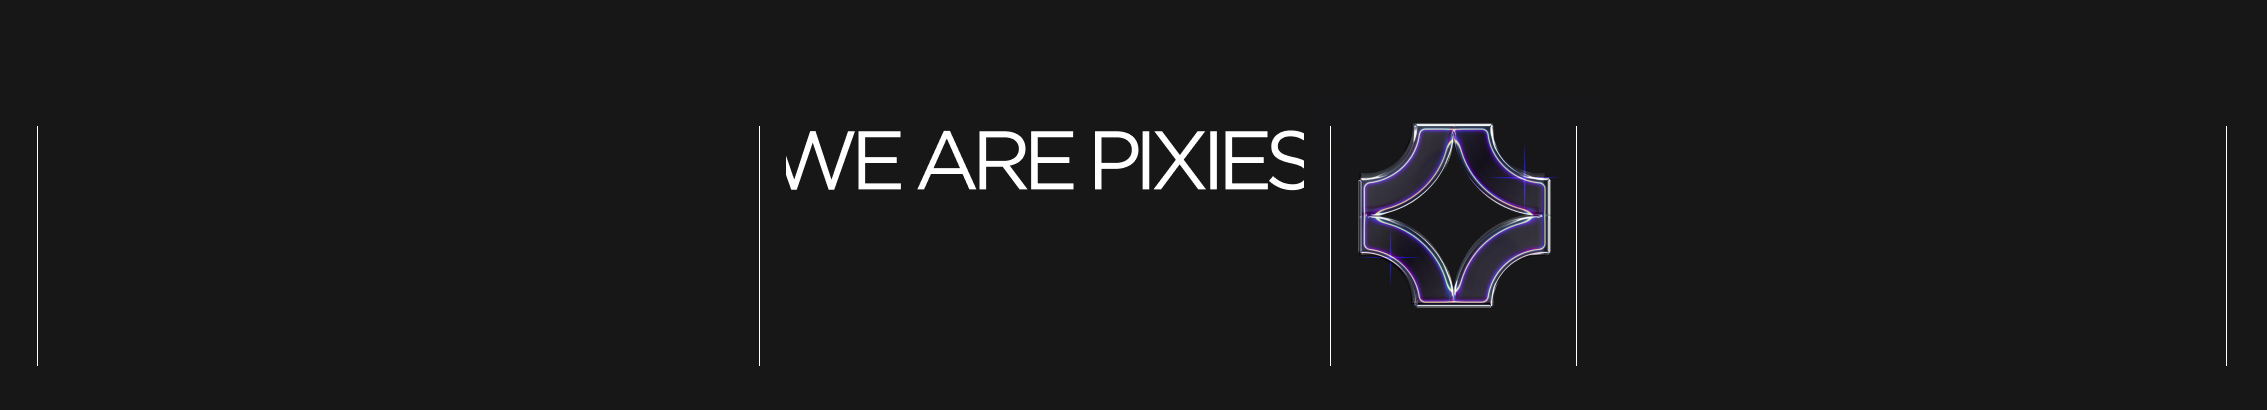 Pixies studio's profile banner